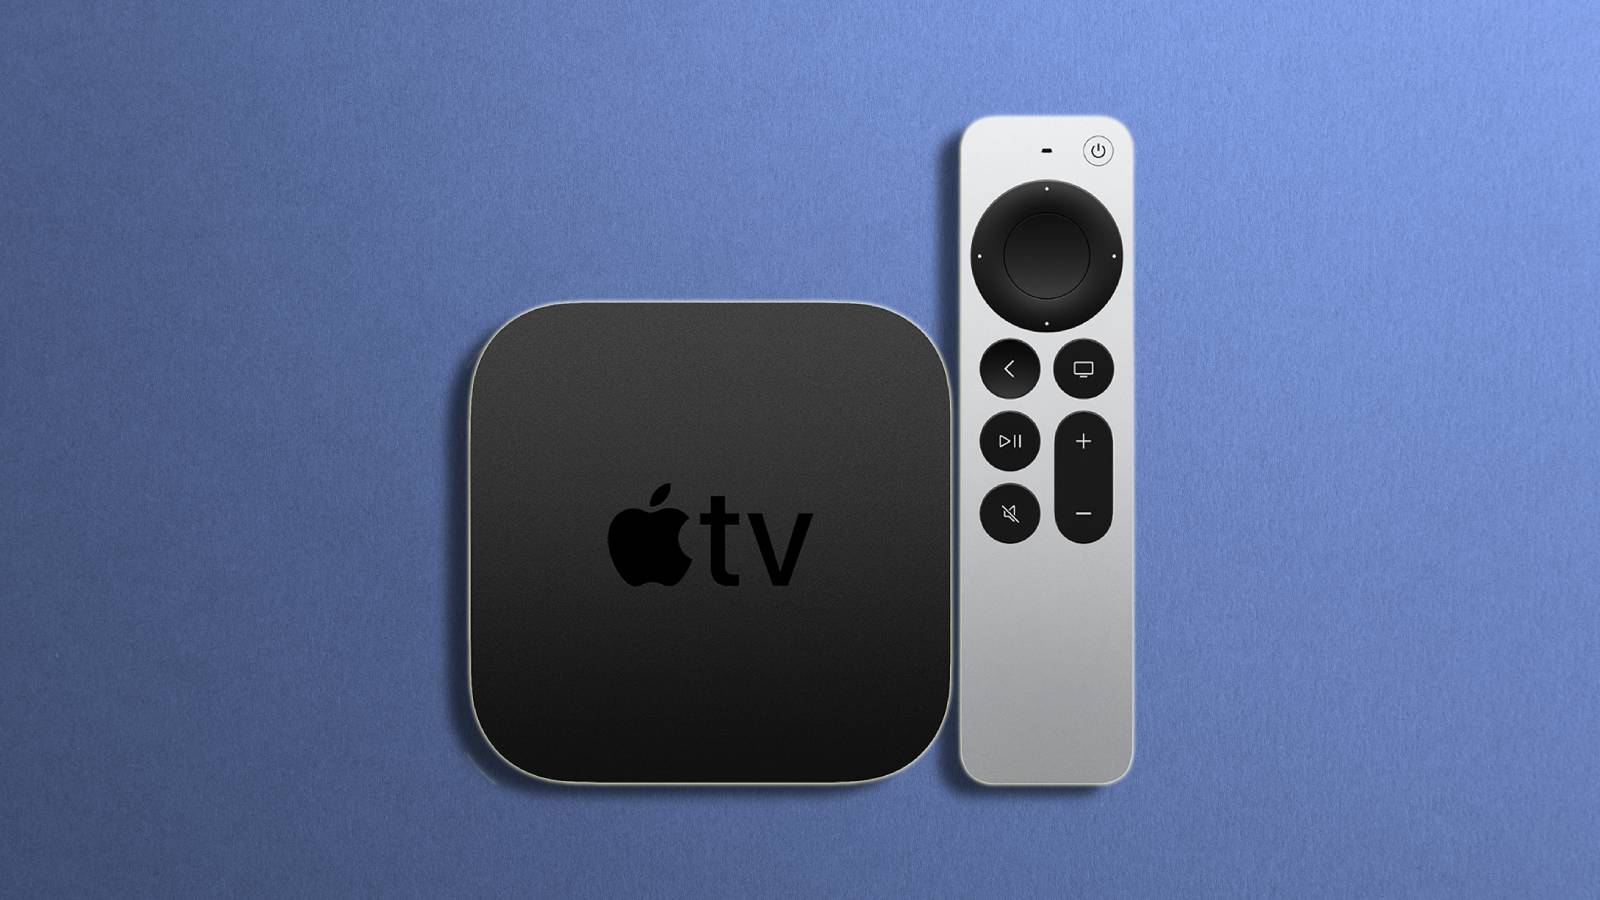 Слухи об Apple TV утверждают, что новые модели получат обновление камеры FaceTime